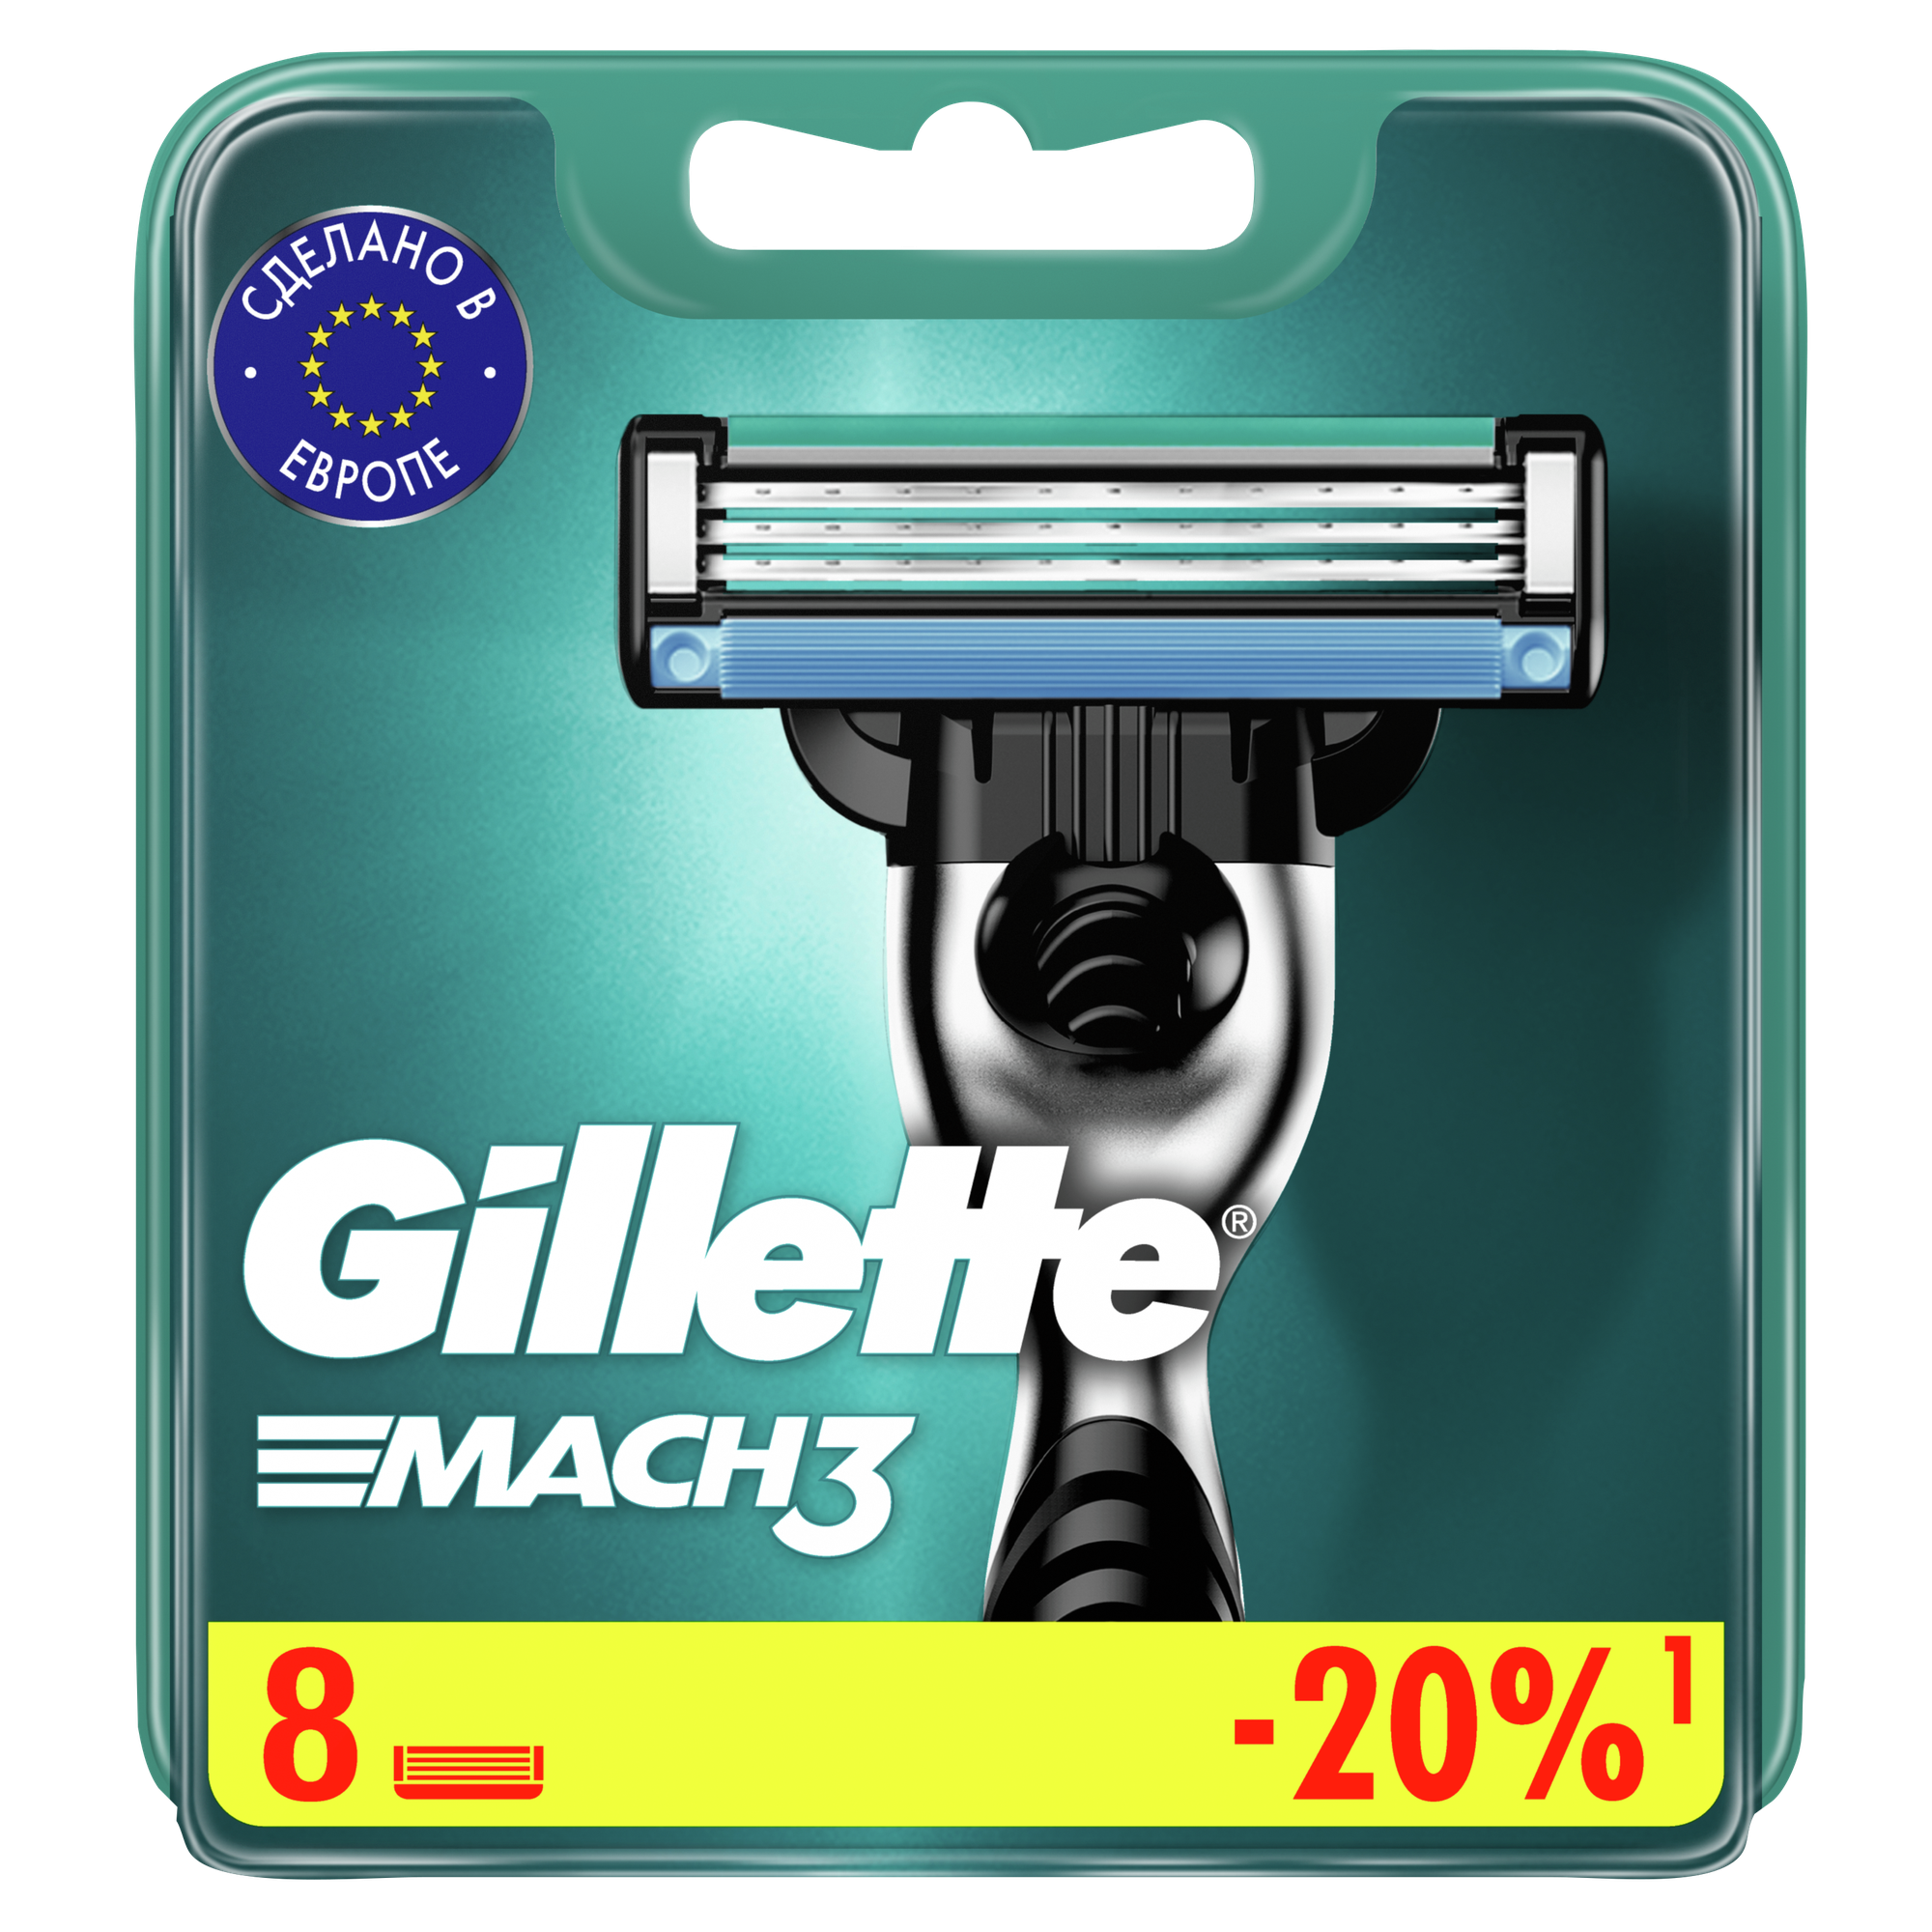     Gillette Mach3, 8 